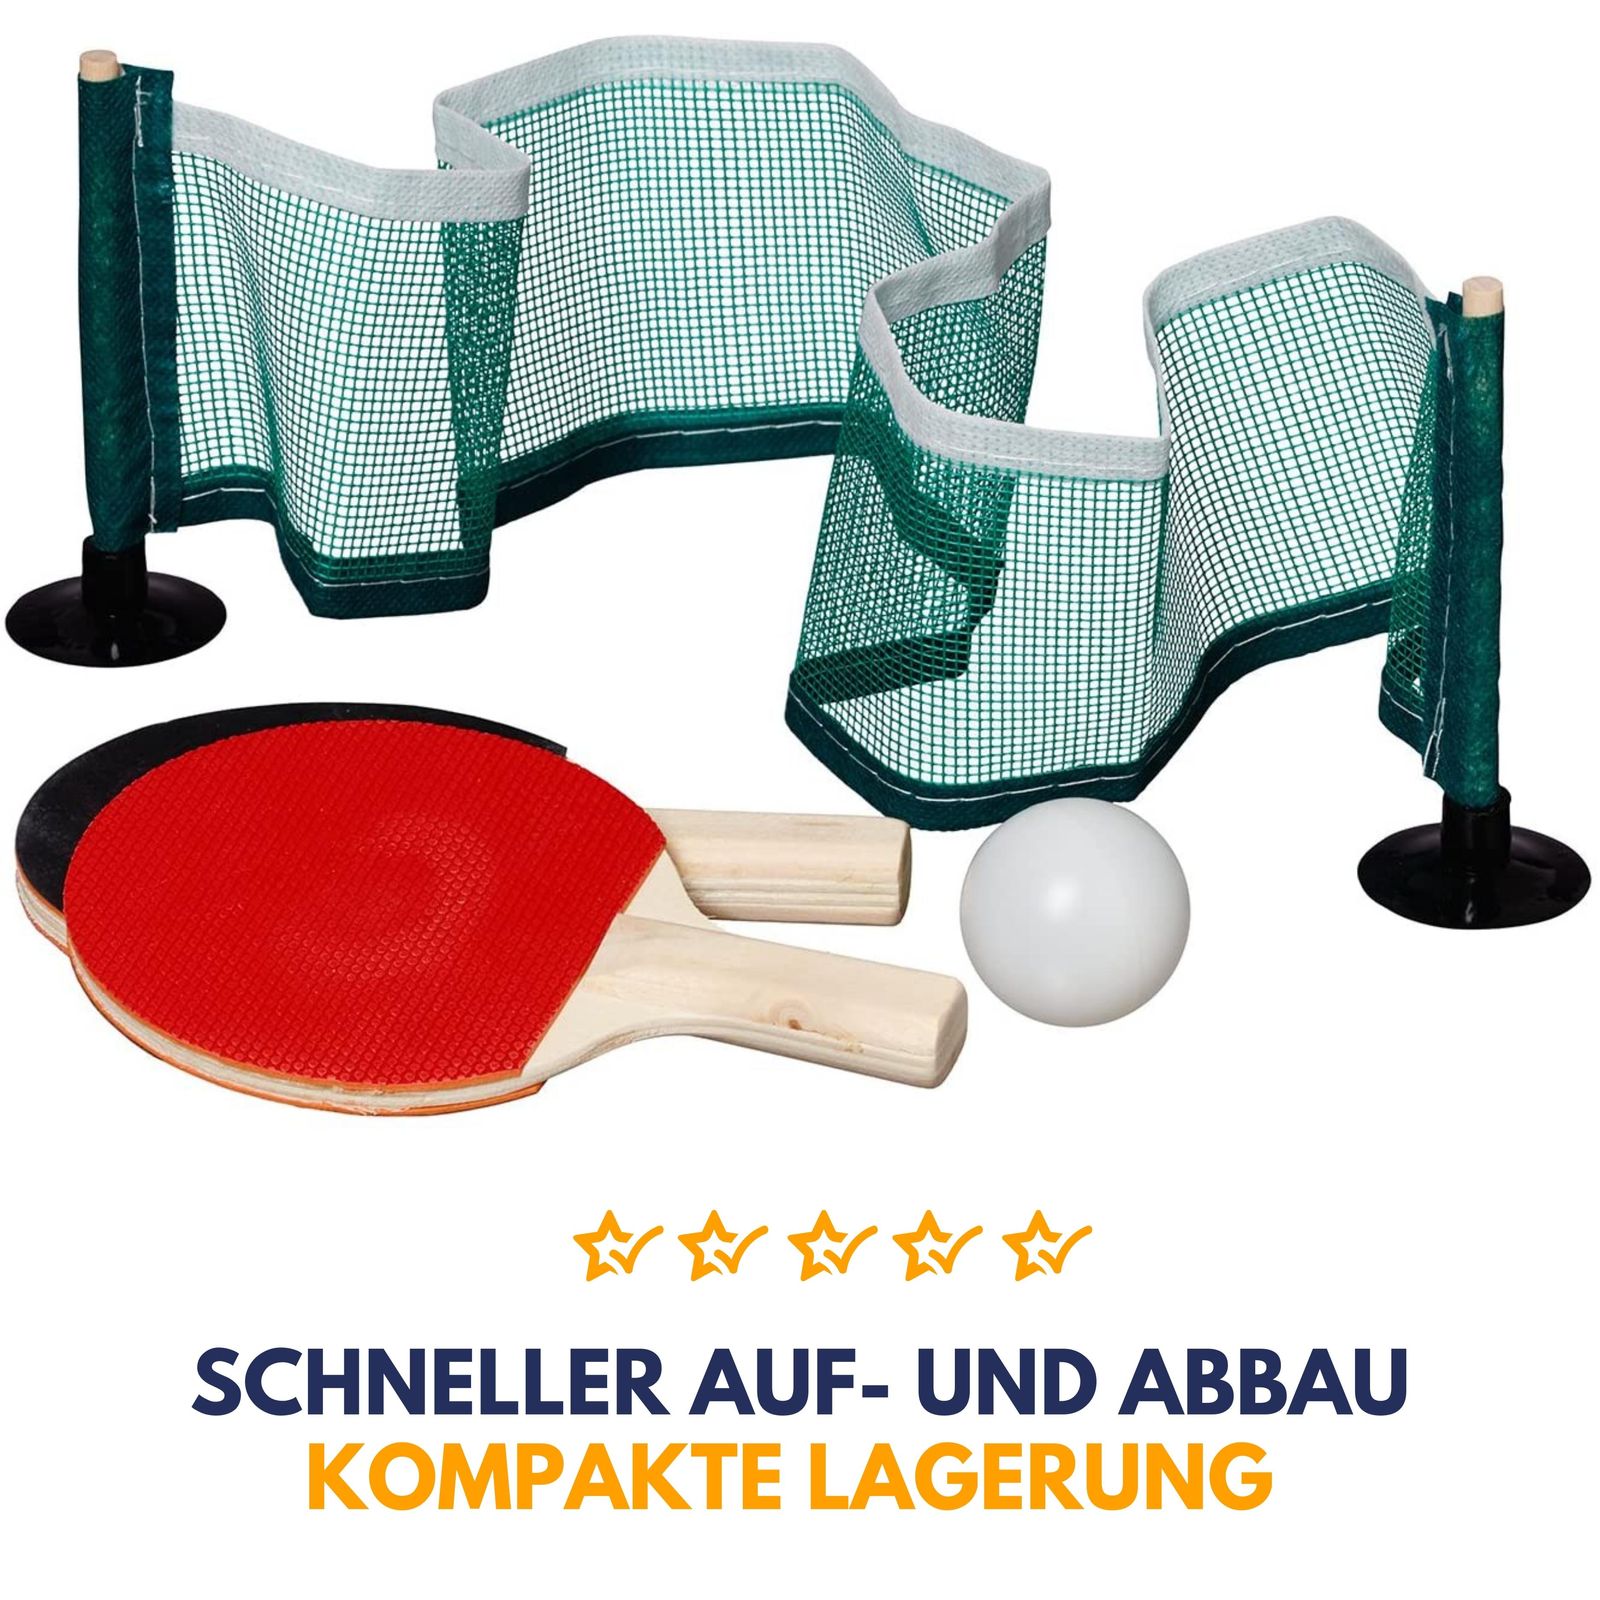 | 2 Mini Sporting Sportbude Mini & Tischtennisspiel inkl. Tischtennisball hochwertige Best I Tischtennis online kaufen! - Mini Netz hier Set Freizeit-Sportartikel Tischtennisschläger